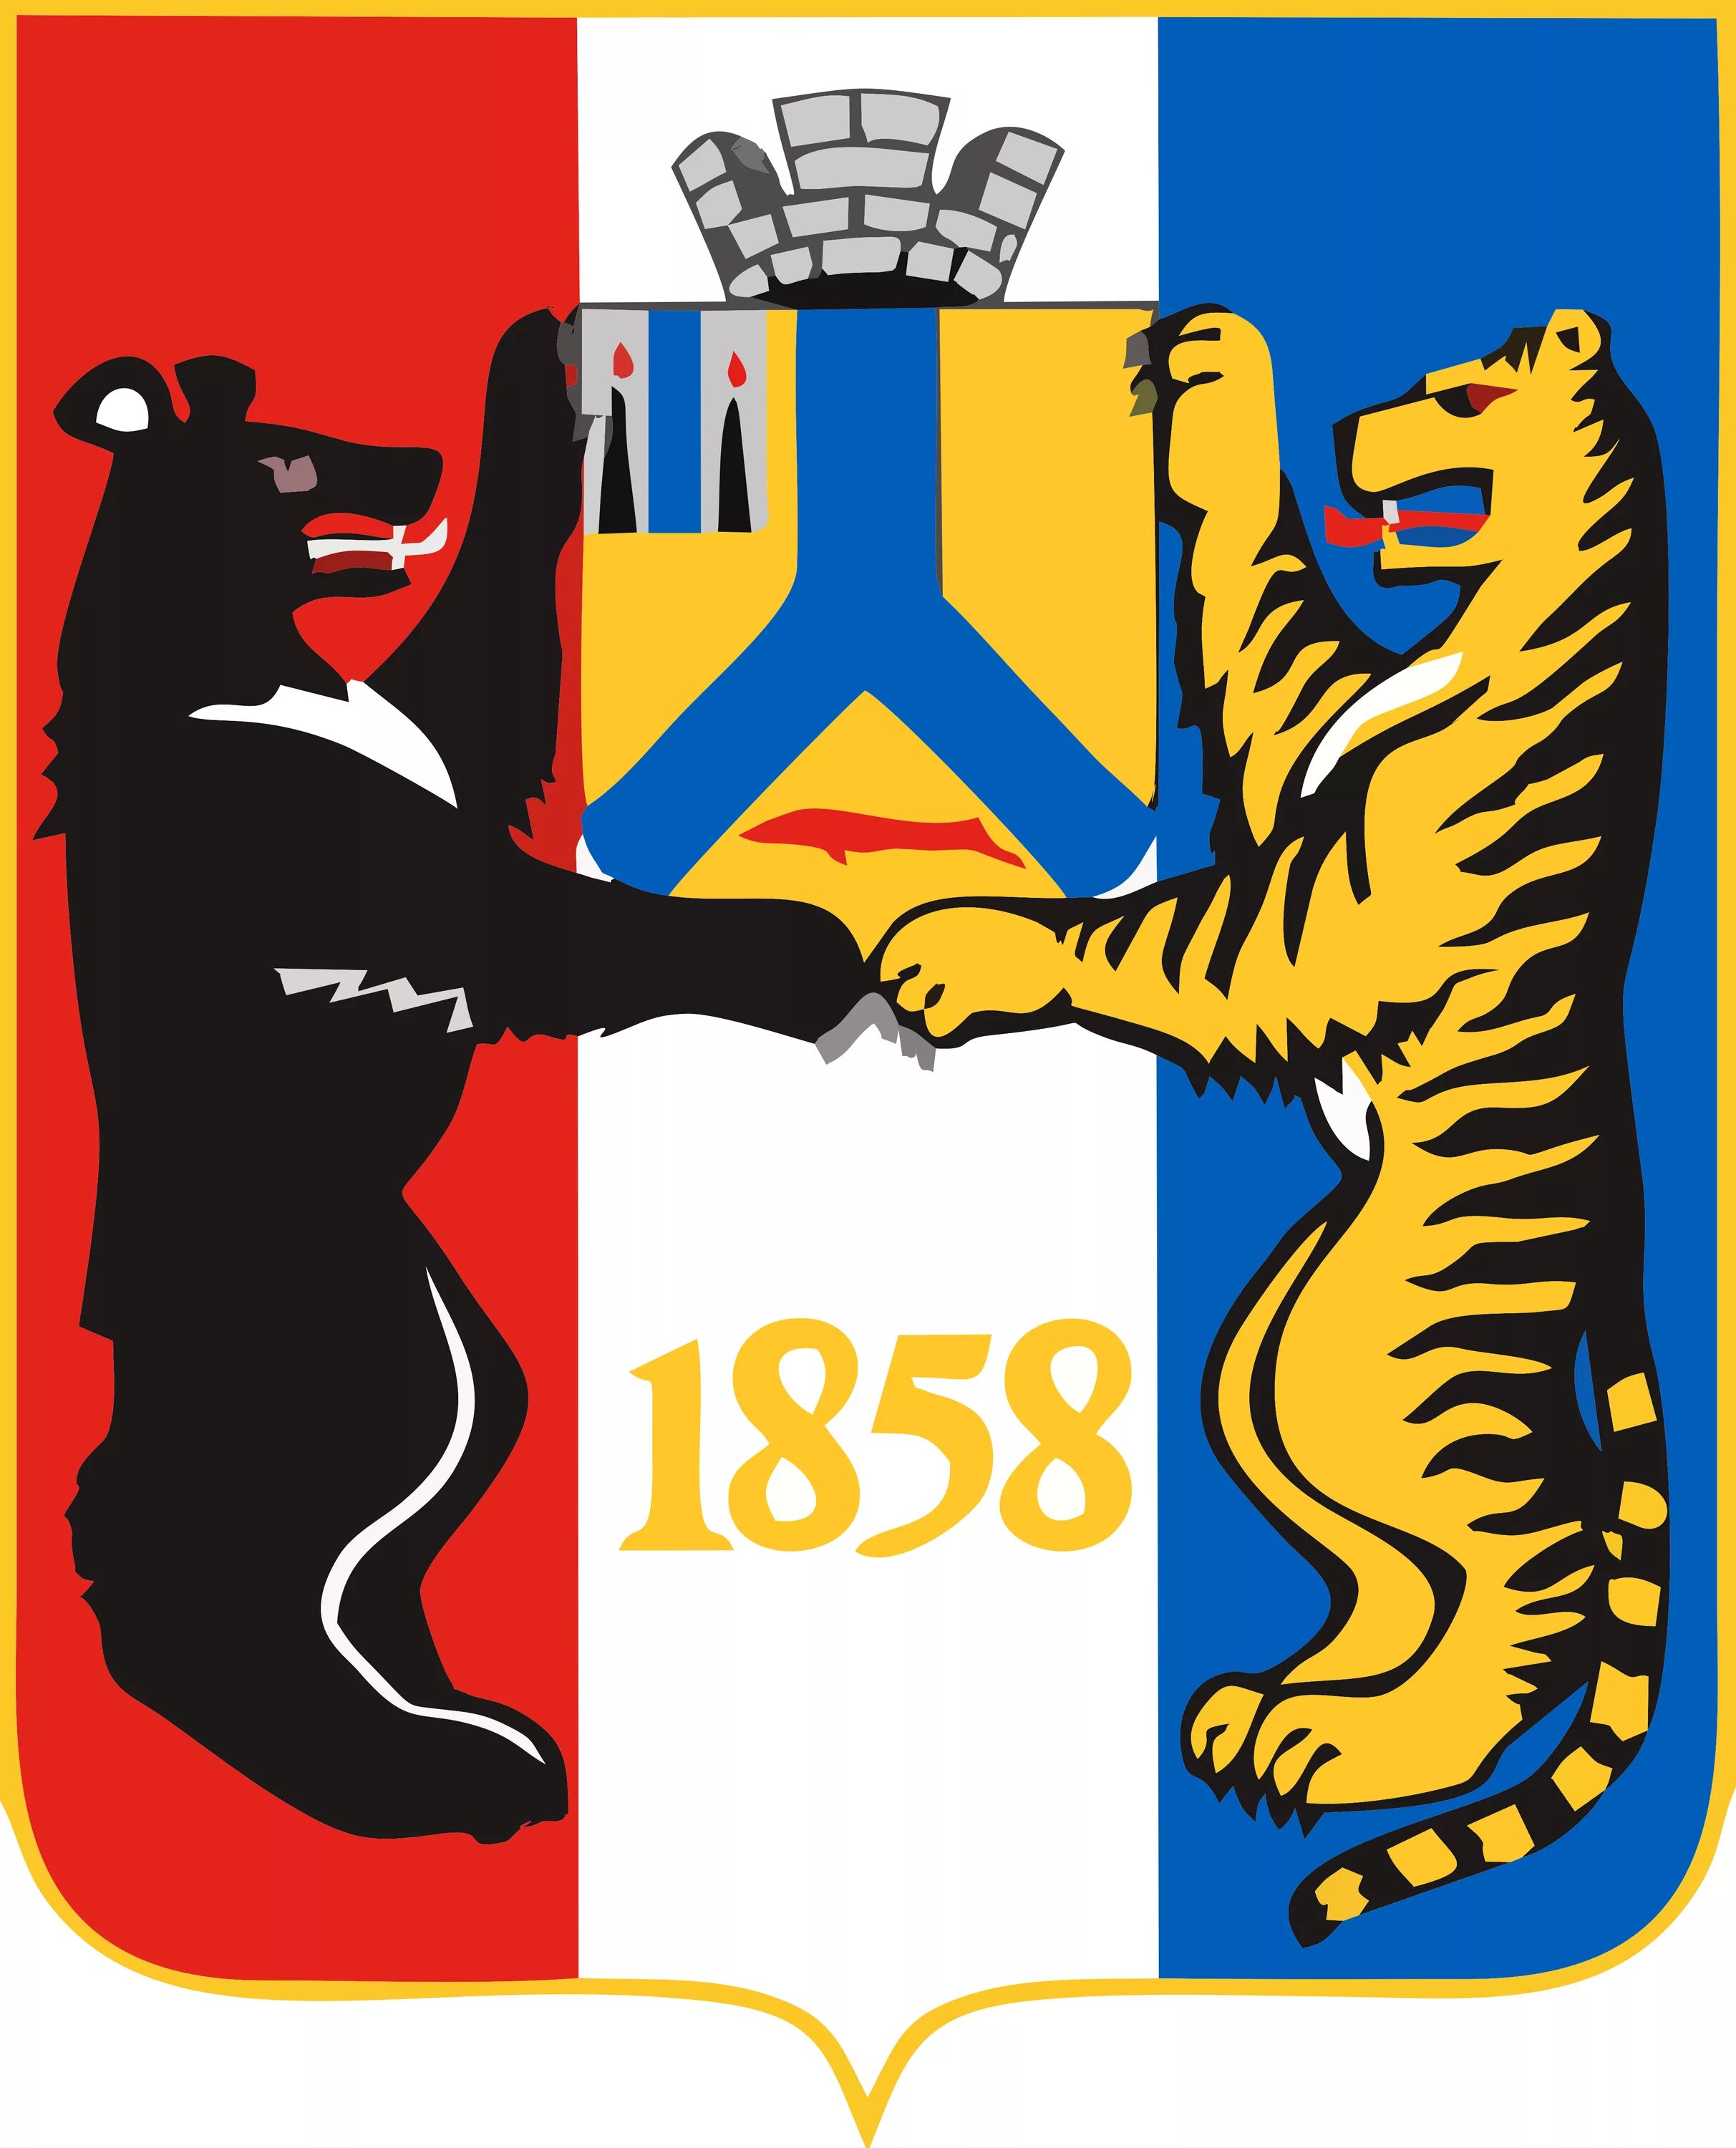 Герб 2 медведя. Второй герб Хабаровска. Живой символ Хабаровска. Флаг города Хабаровска. Символы герба Хабаровска.